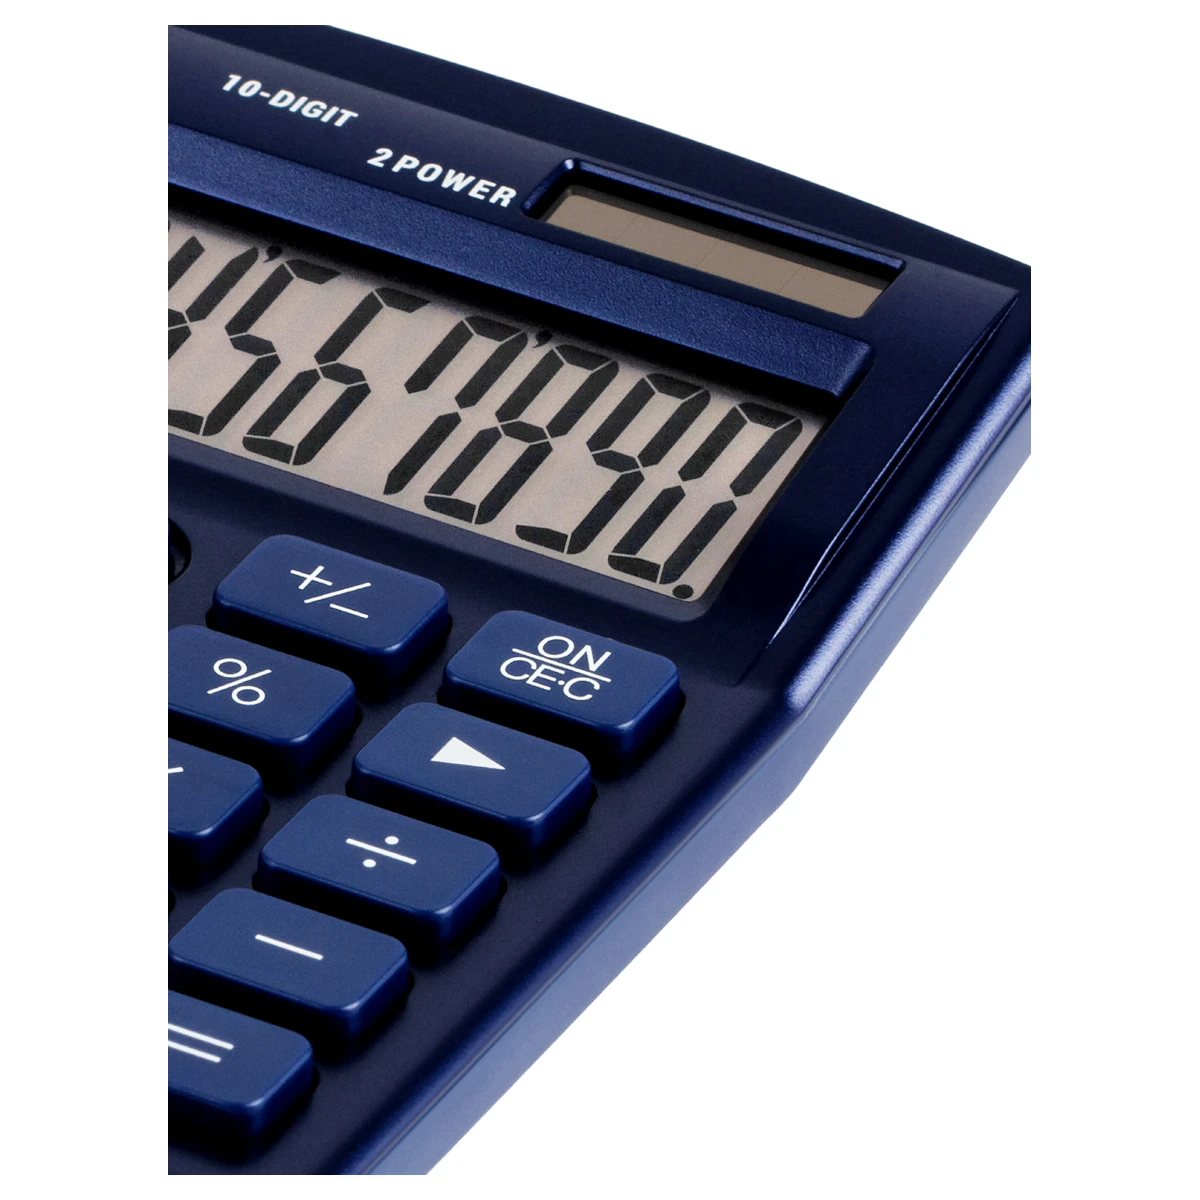 Калькулятор настольный Eleven SDC-810NR-NV, 10 разрядов, двойное питание,